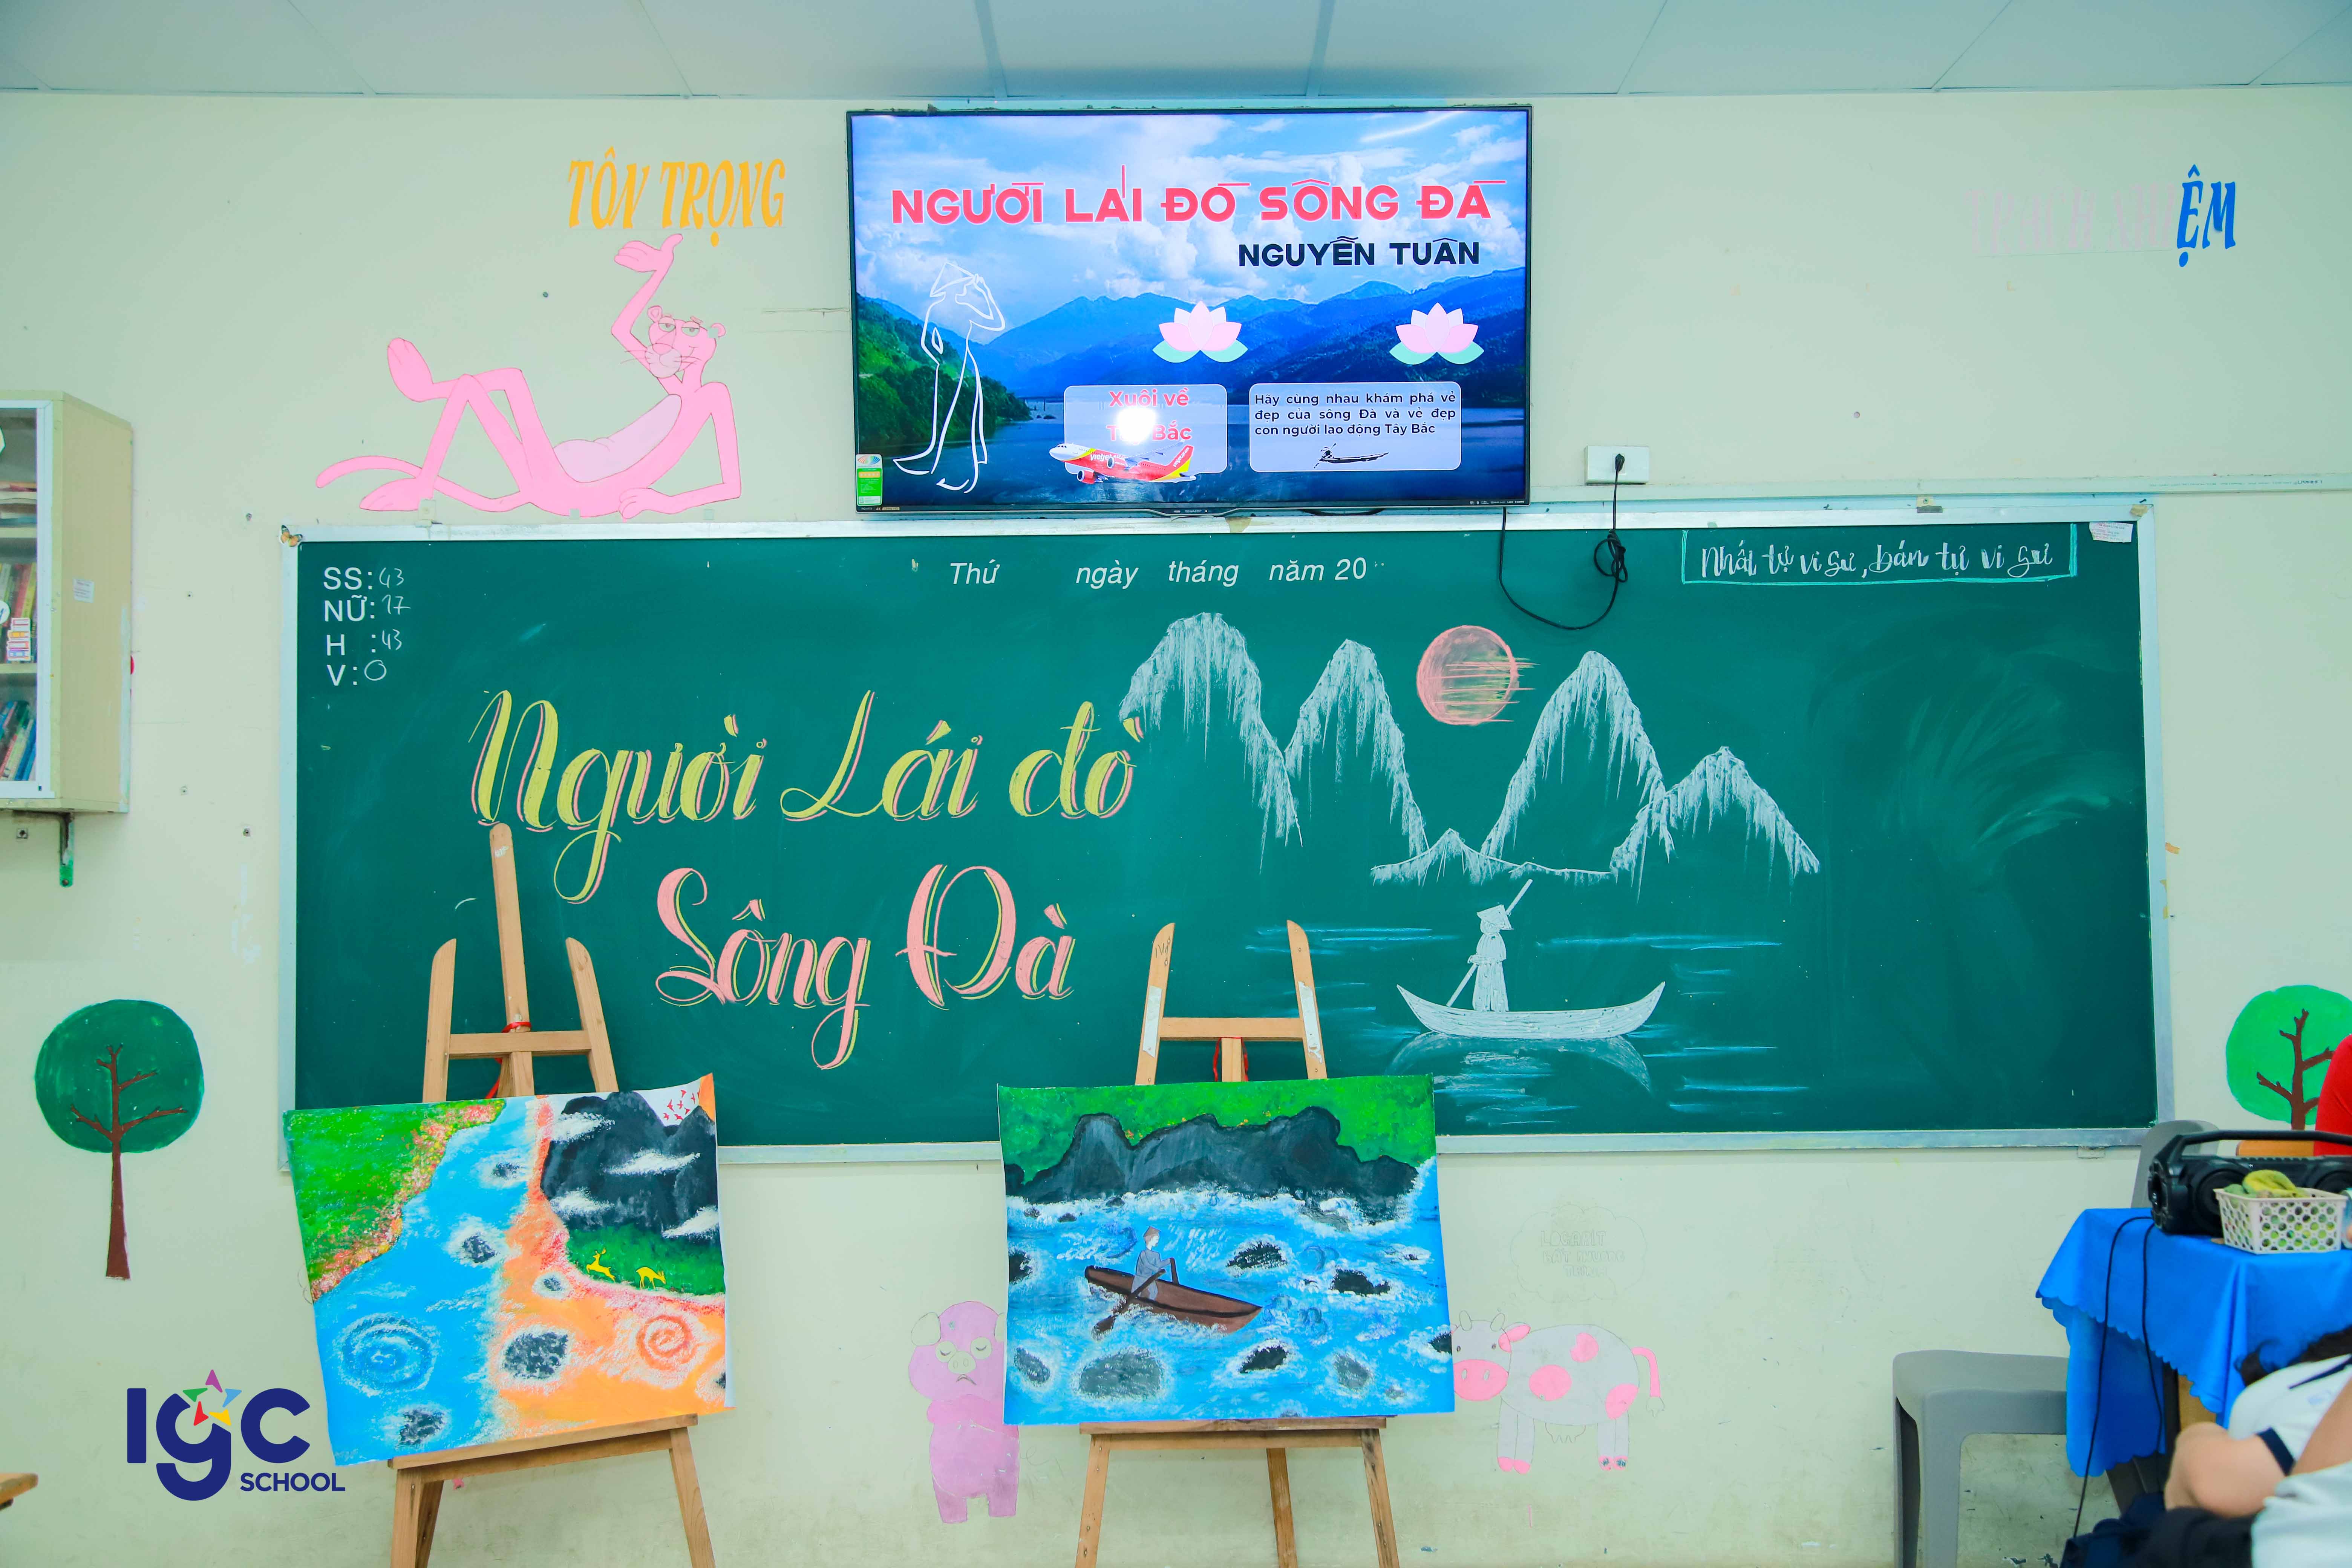 Vận dụng phương pháp vòng tròn văn học vào dạy học tác phẩm Người lái đò sông Đà của nhà văn Nguyễn Tuân